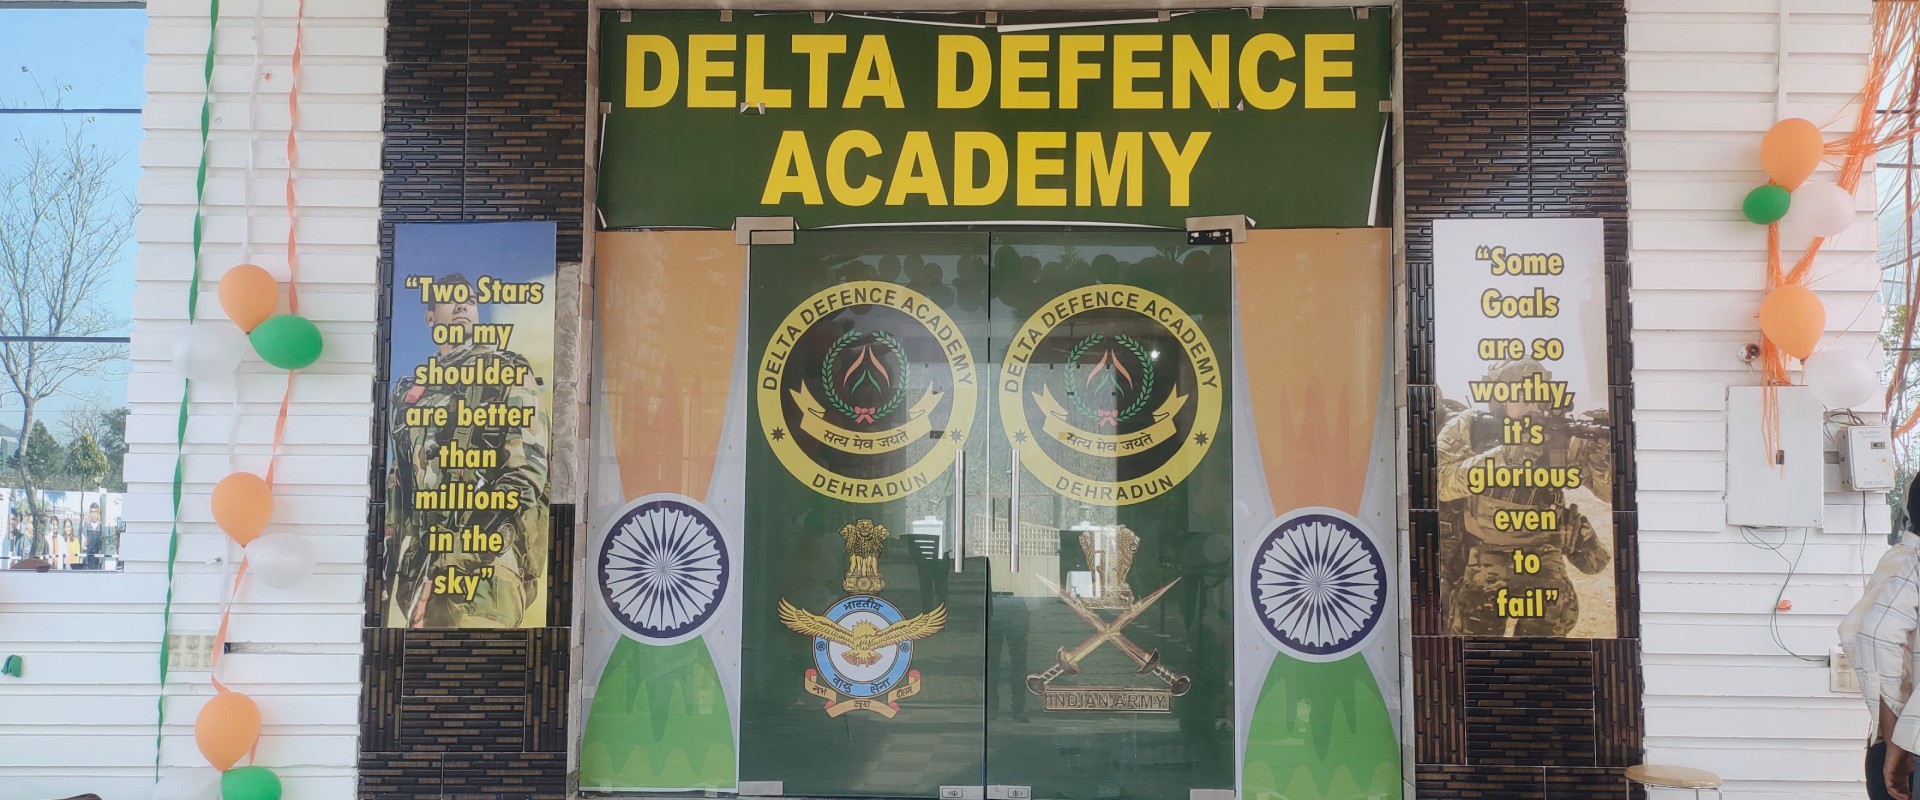 delta defence academy dehradun uttrakhand new campus